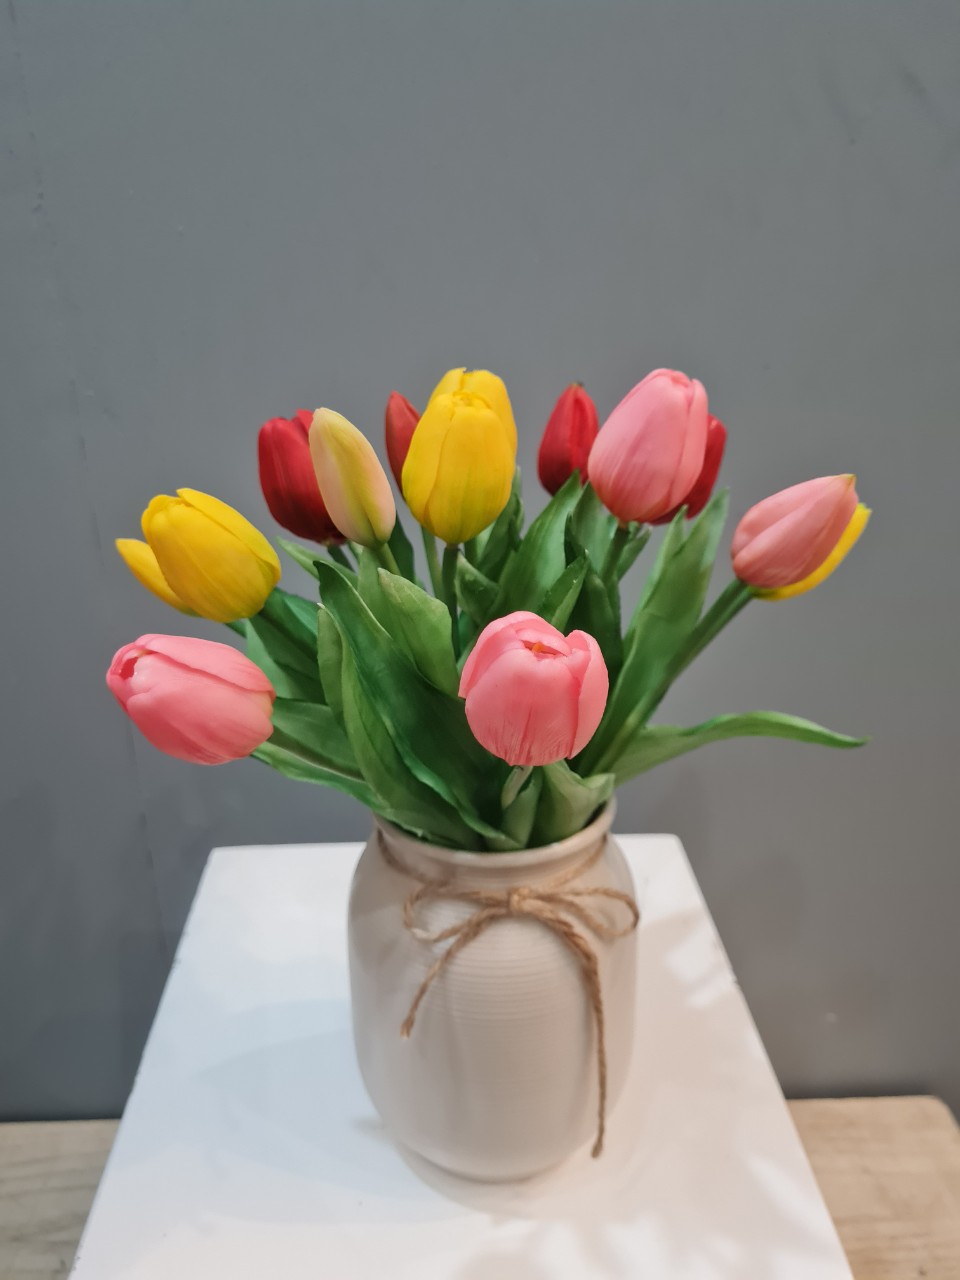 bình gốm hoa tulip vải nhiều màu quà tặng 20-11 